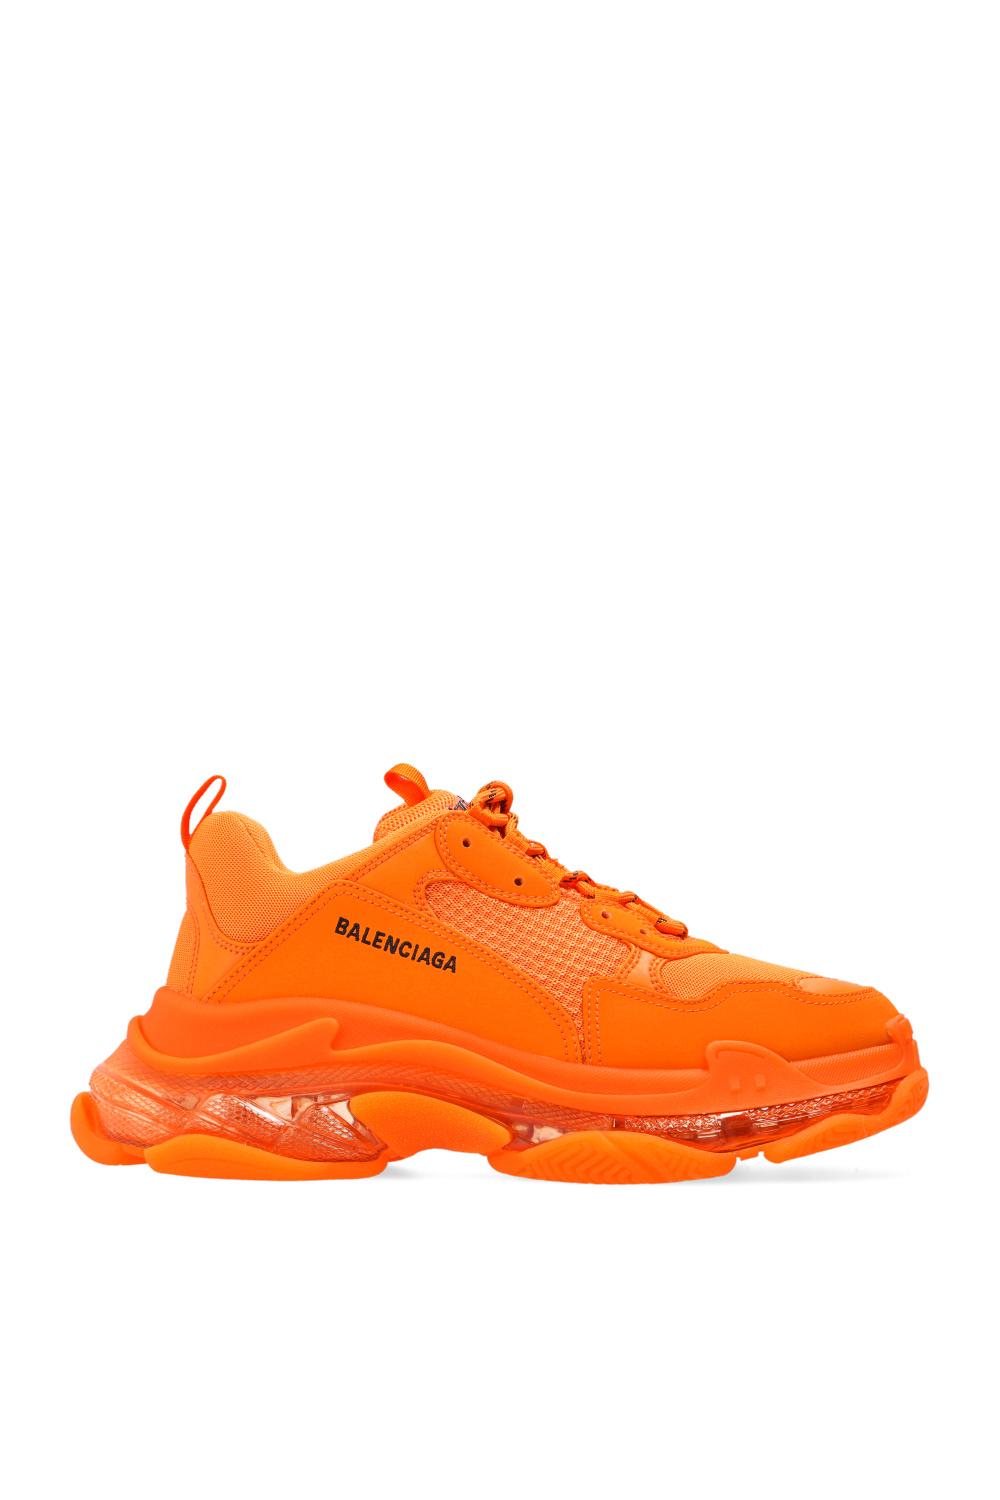 Balenciaga 'triple S' Sneakers in Neon (Orange) for Men | Lyst